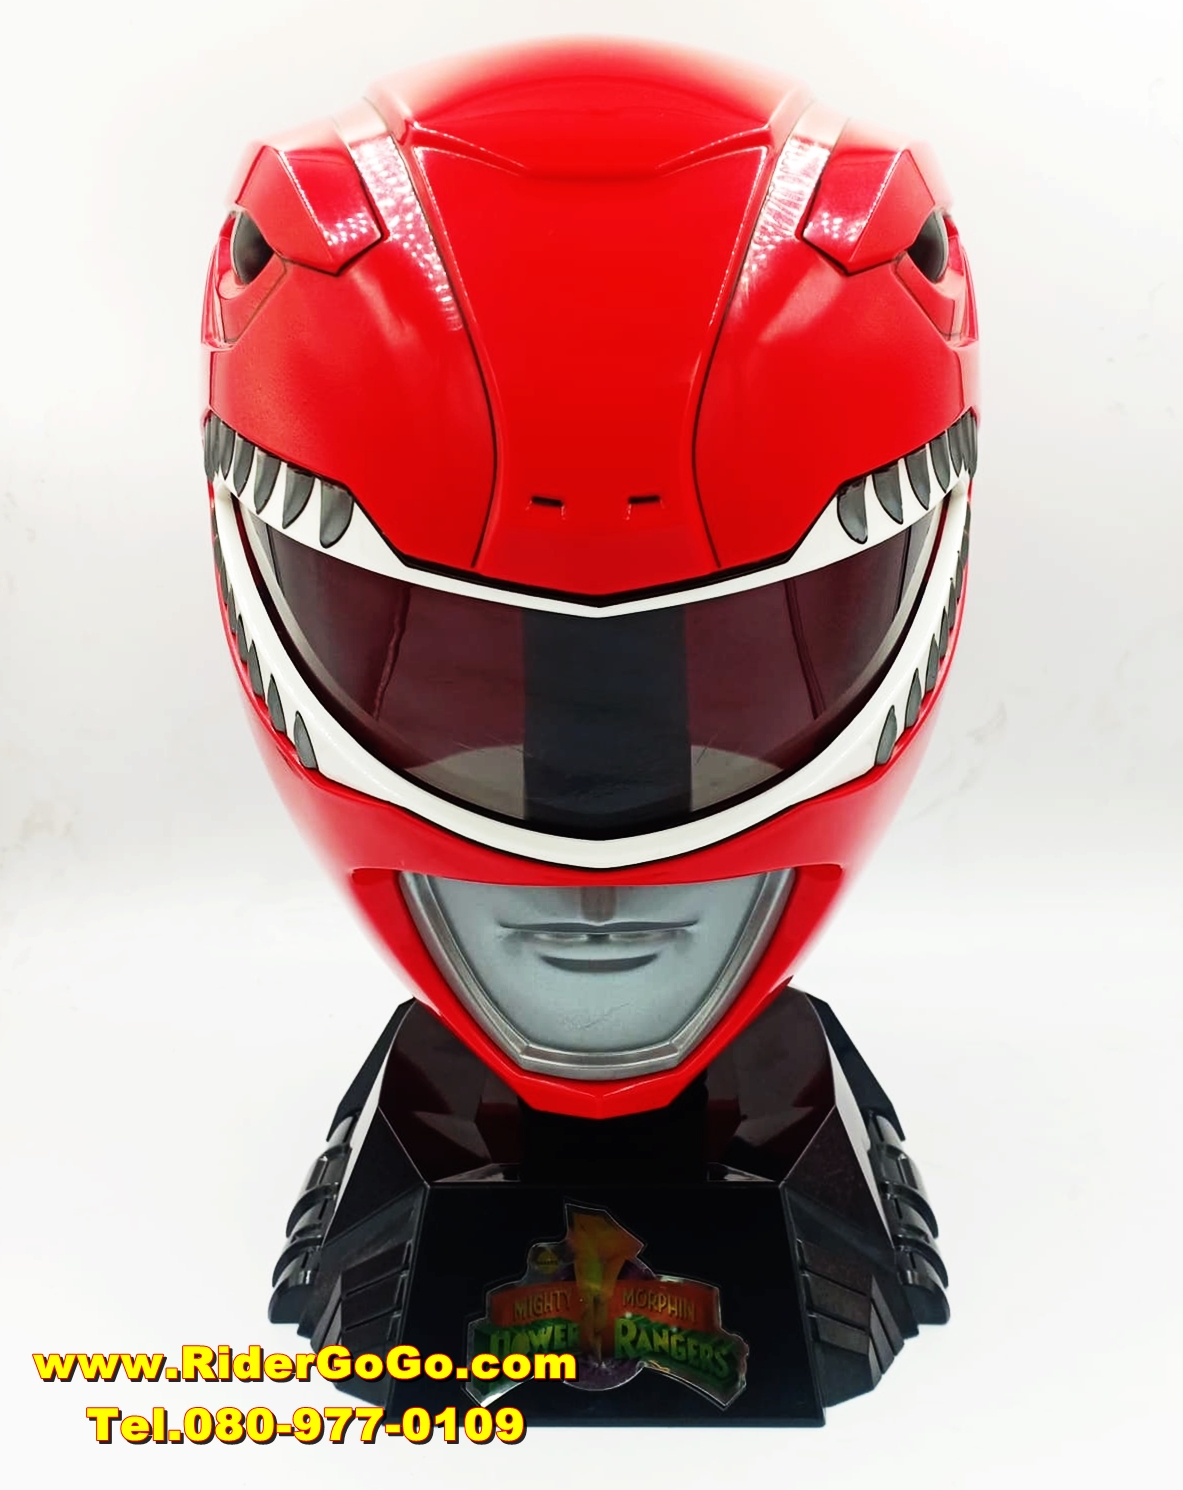 หมวกไทแรนโนเรนเจอร์เรนเจอร์ จากขบวนการจูเรนเจอร์ ทางประเทศอเมริกาก็จะเรียกว่า เรดเรนเจอร์ Power Rangers Lightning Collection Premium Red Ranger Helmet (Tyranno Ranger Helmet) ของลิขสิทธิ์แท้จากHasbro รูปที่ 1